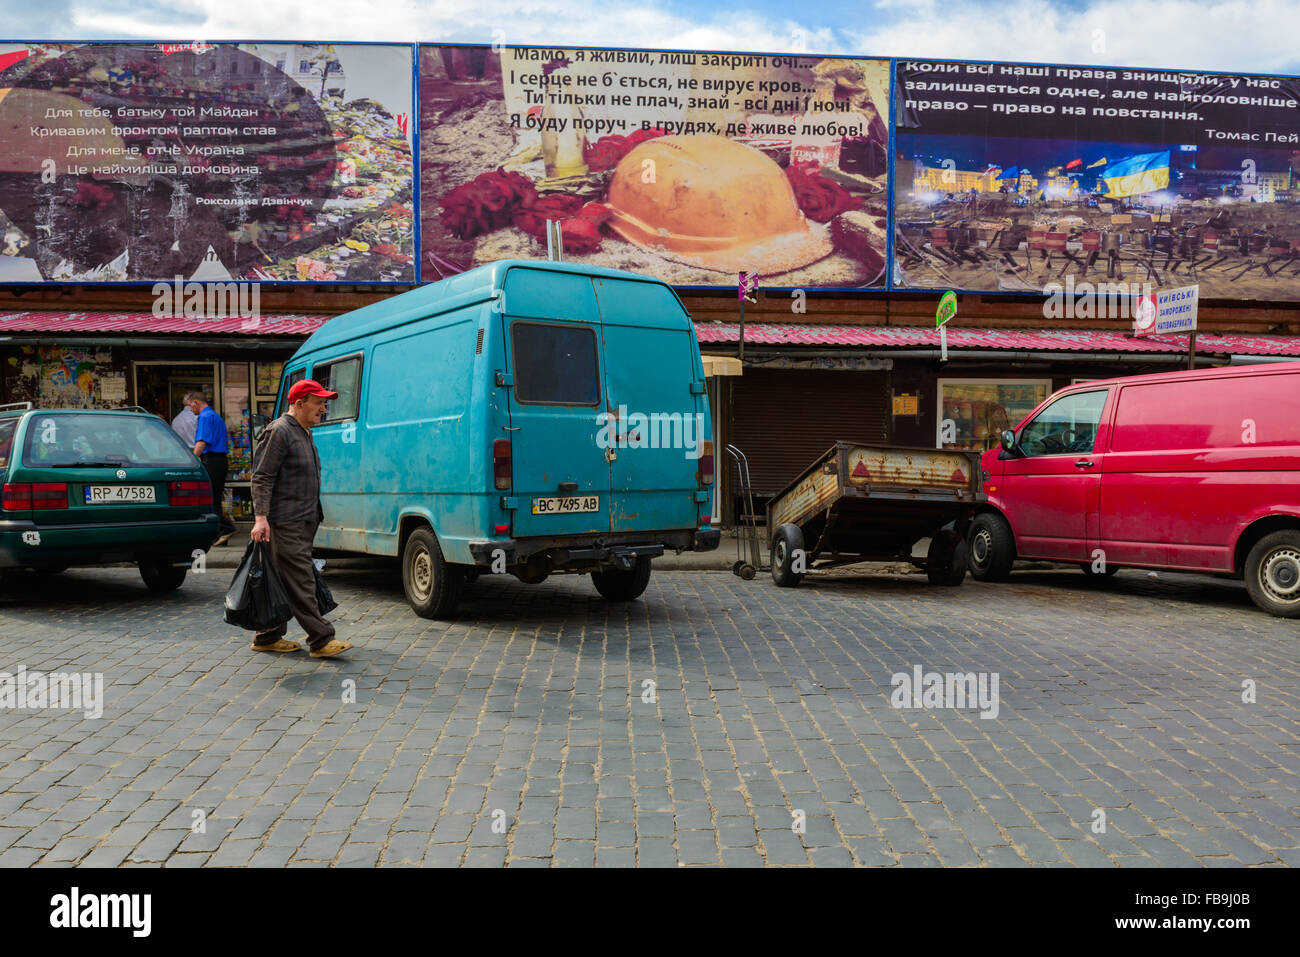 Mann mit Plastiktüte vorbei an Autos und Maydan-Themen Plakatwänden in einem Markt, Lviv, Ukraine Stockfoto